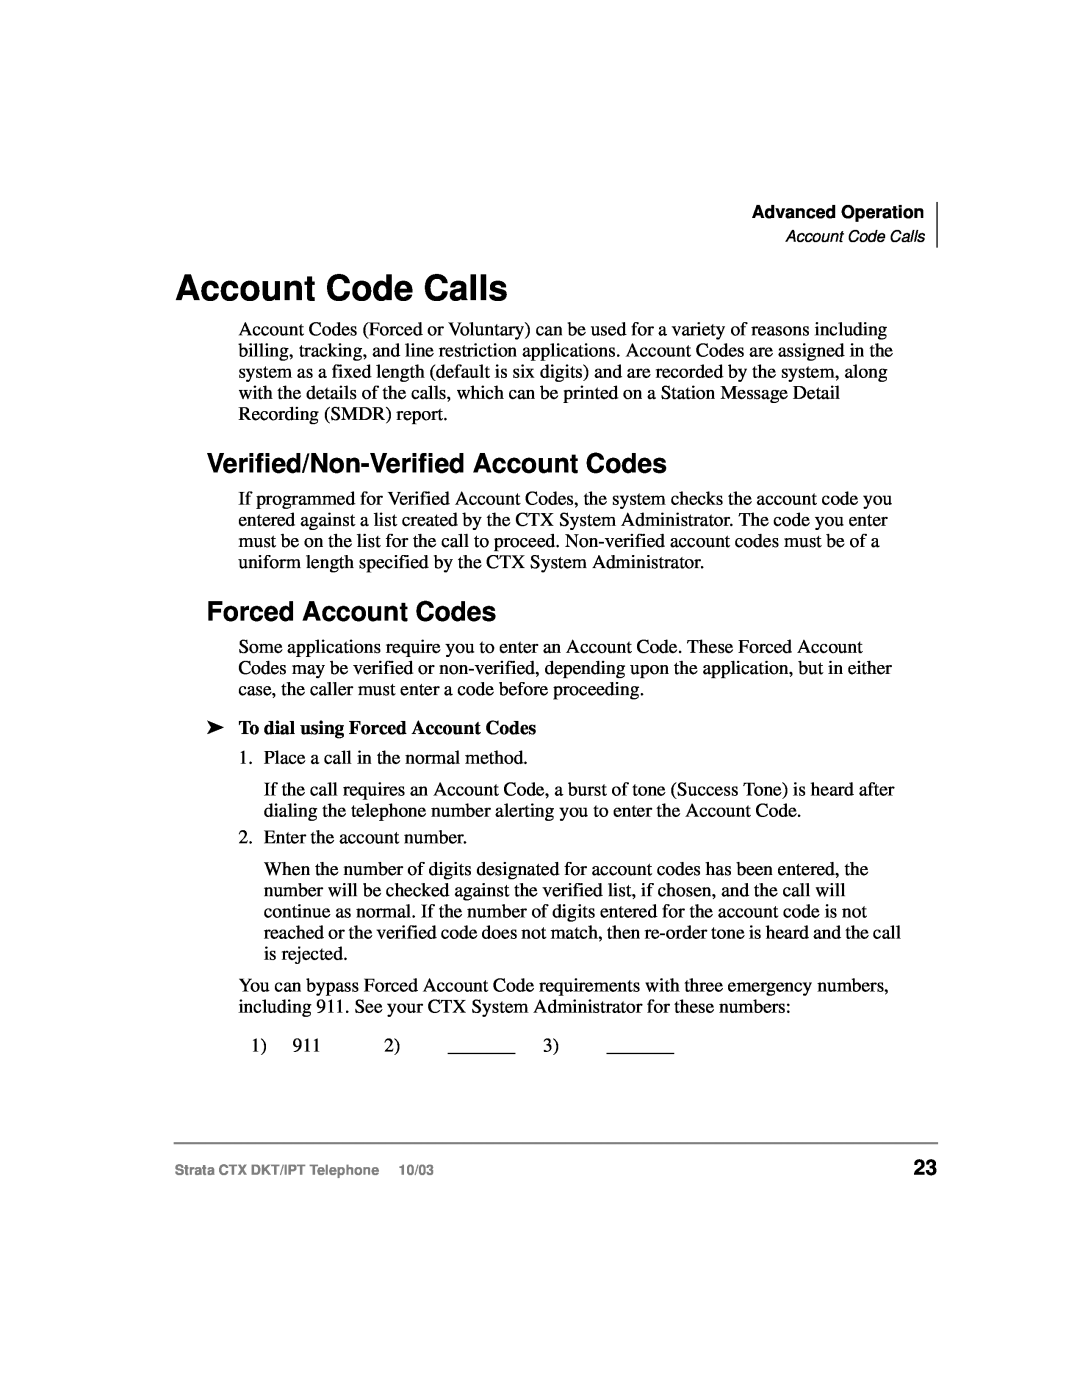 Toshiba DKT, IPT manual Account Code Calls, Verified/Non-Verified Account Codes, Forced Account Codes 